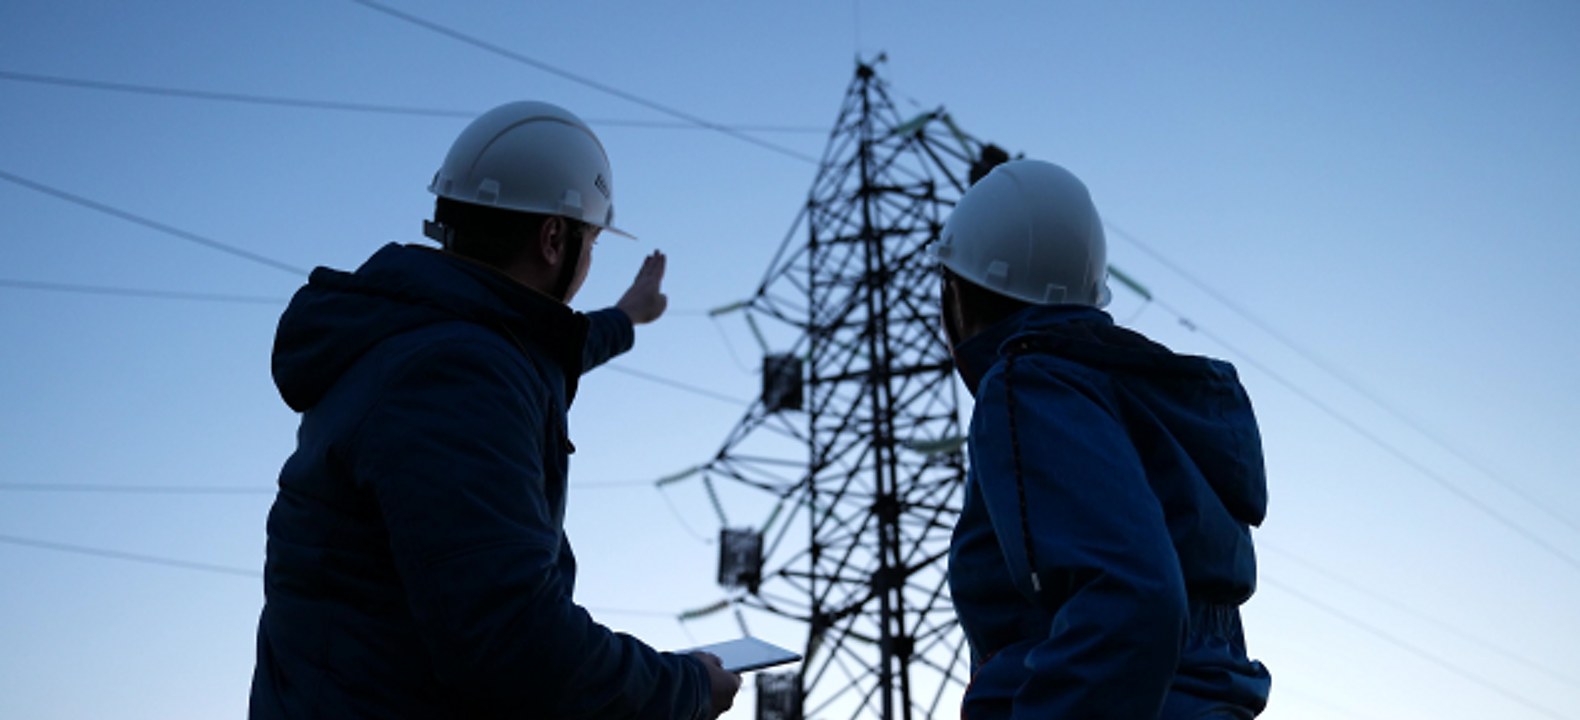 Dos técnicos del sector energético utilizando una tablet mientras evalúan una torre de tendido eléctrico.